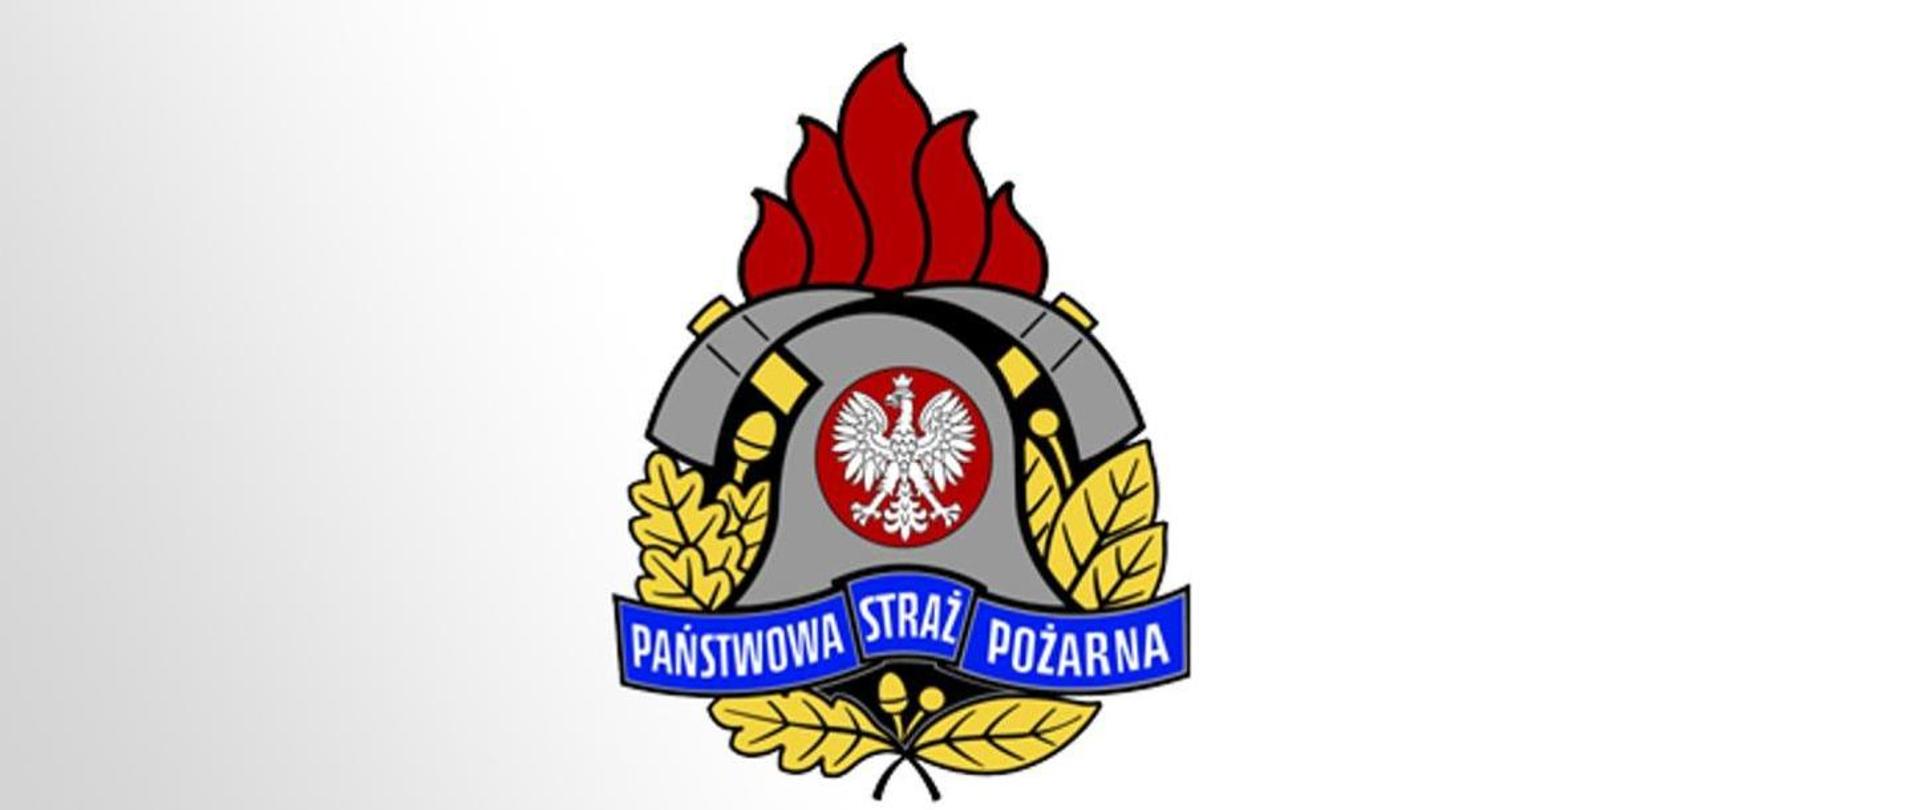 Logo Państwowej Straży Pożarnej - hełm strażacki ze skrzyżowanymi toporkami strażackimi, nad nimi ognik, pod hełmem napis Państwowa Straż Pożarna. W centralnej części loga godło - orzeł biały